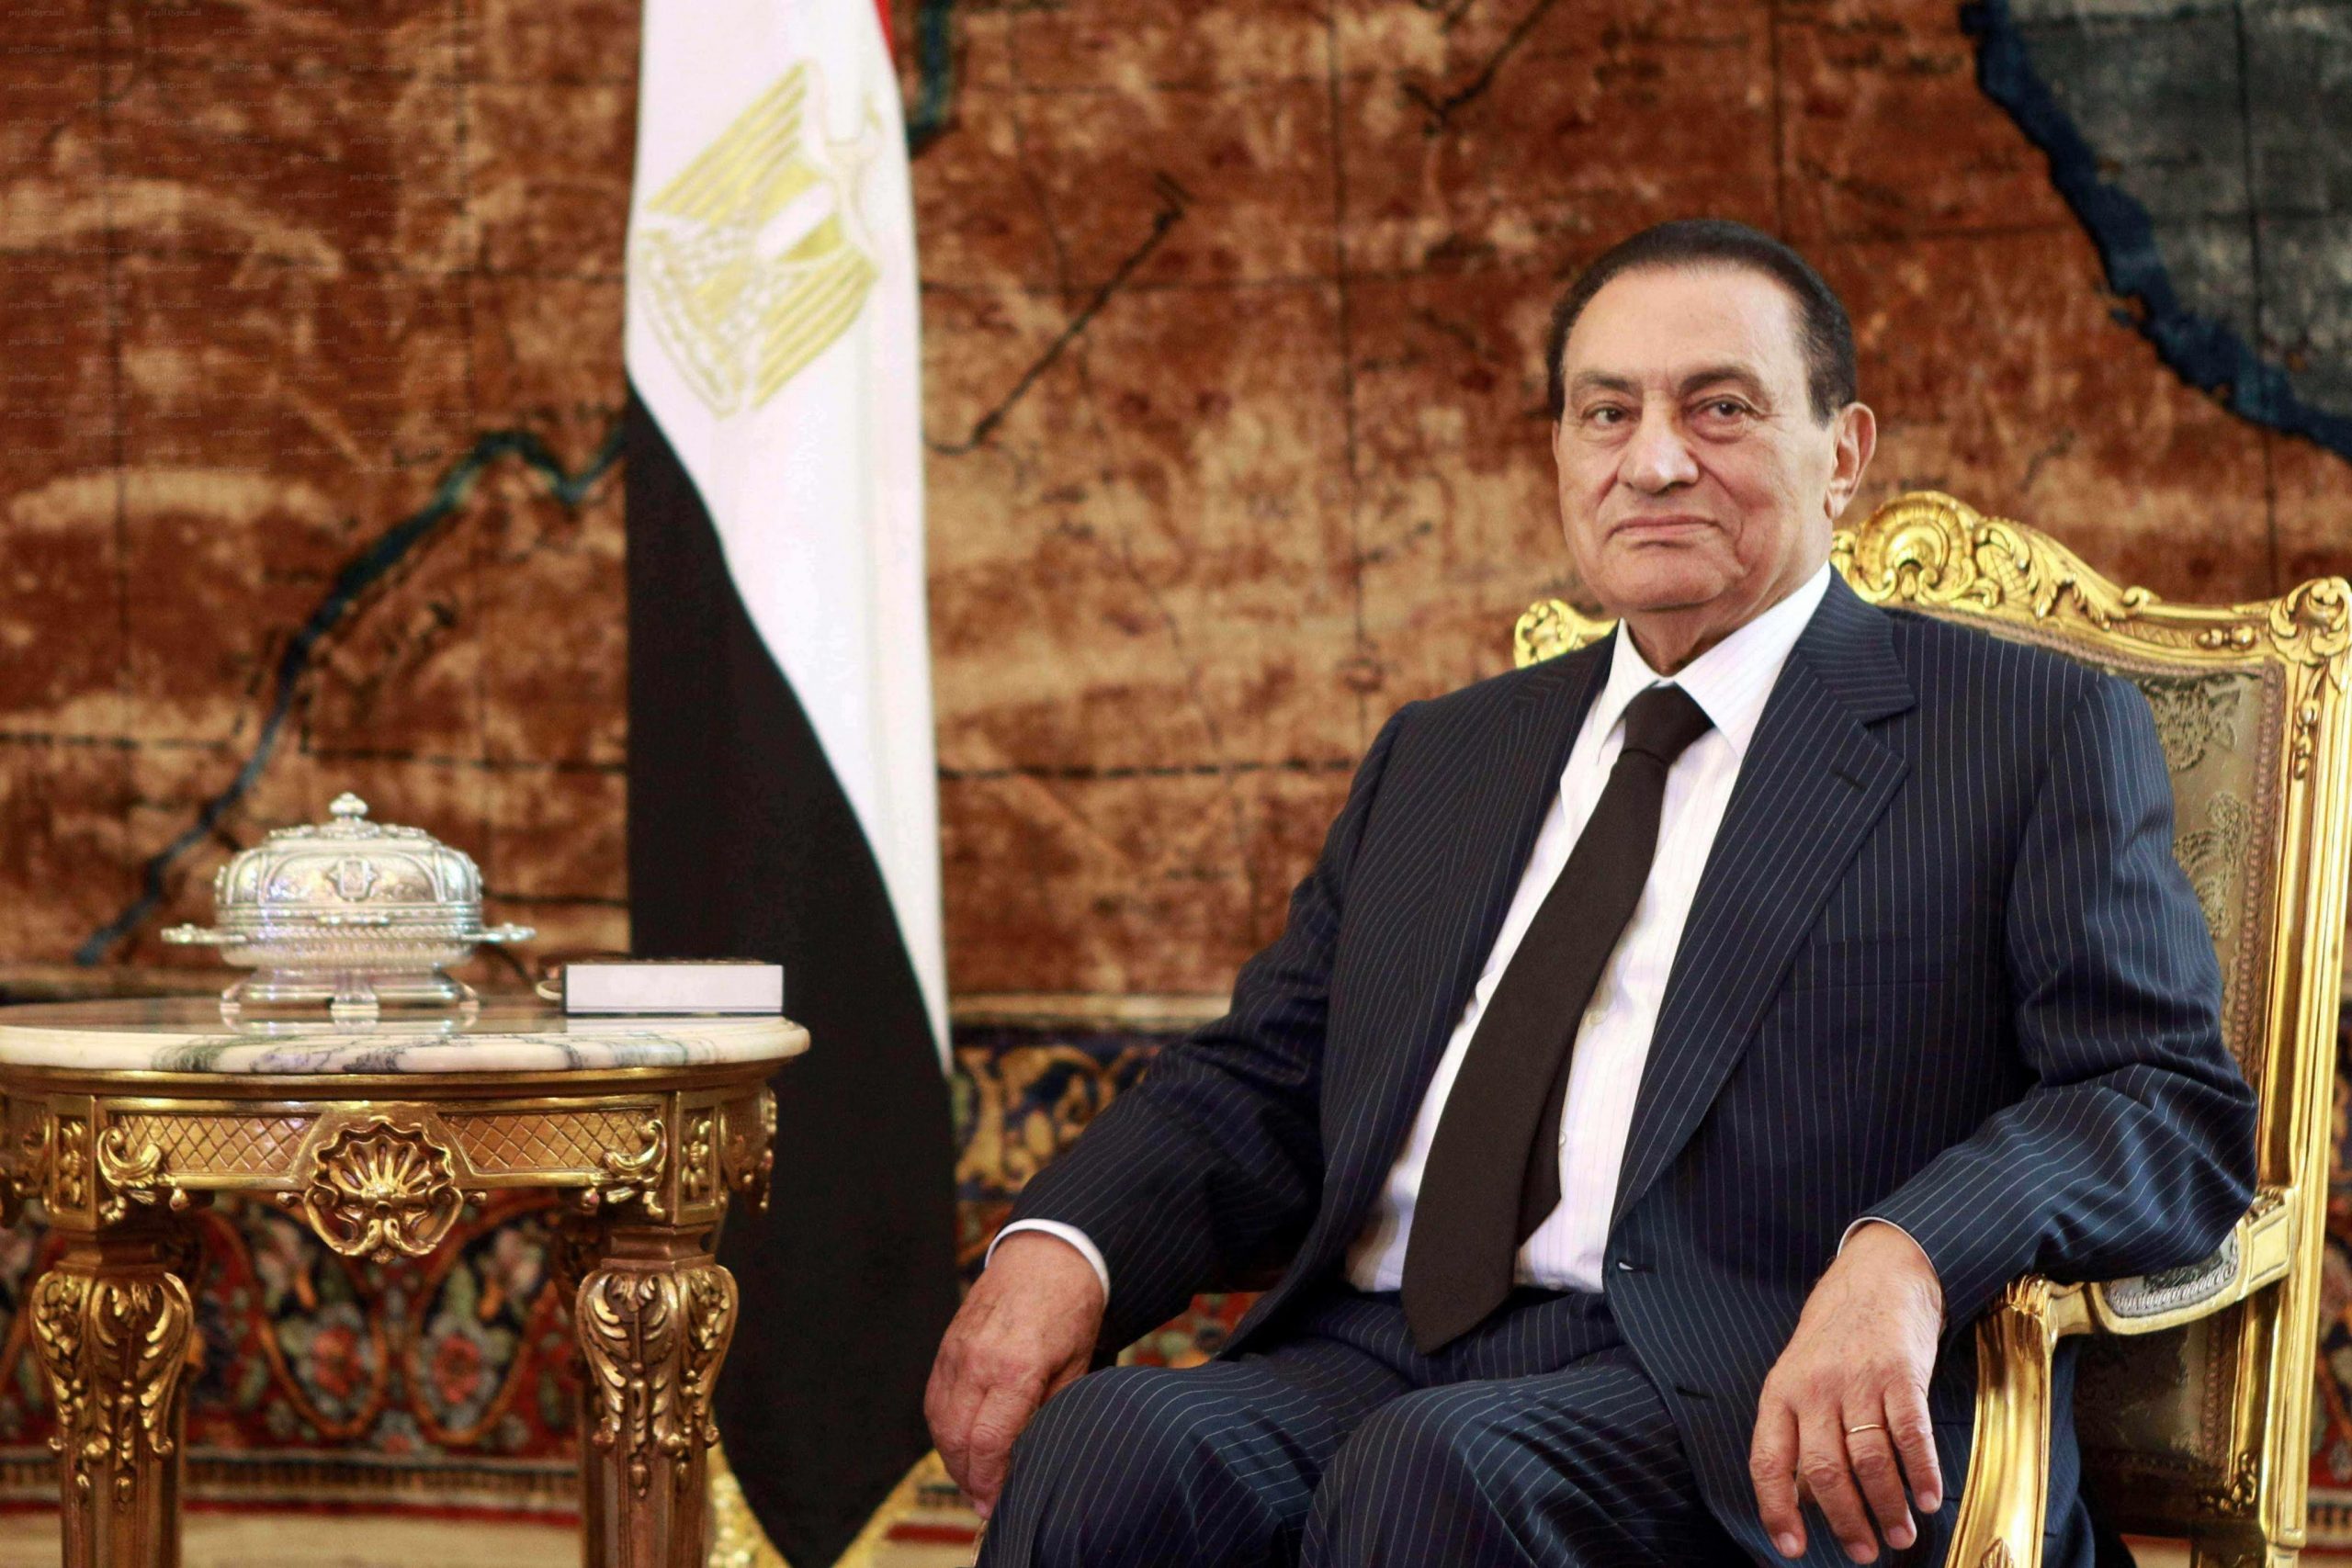 “بالصور” تعرف على سيارات الرئيس المصري الراحل محمد حسني مبارك